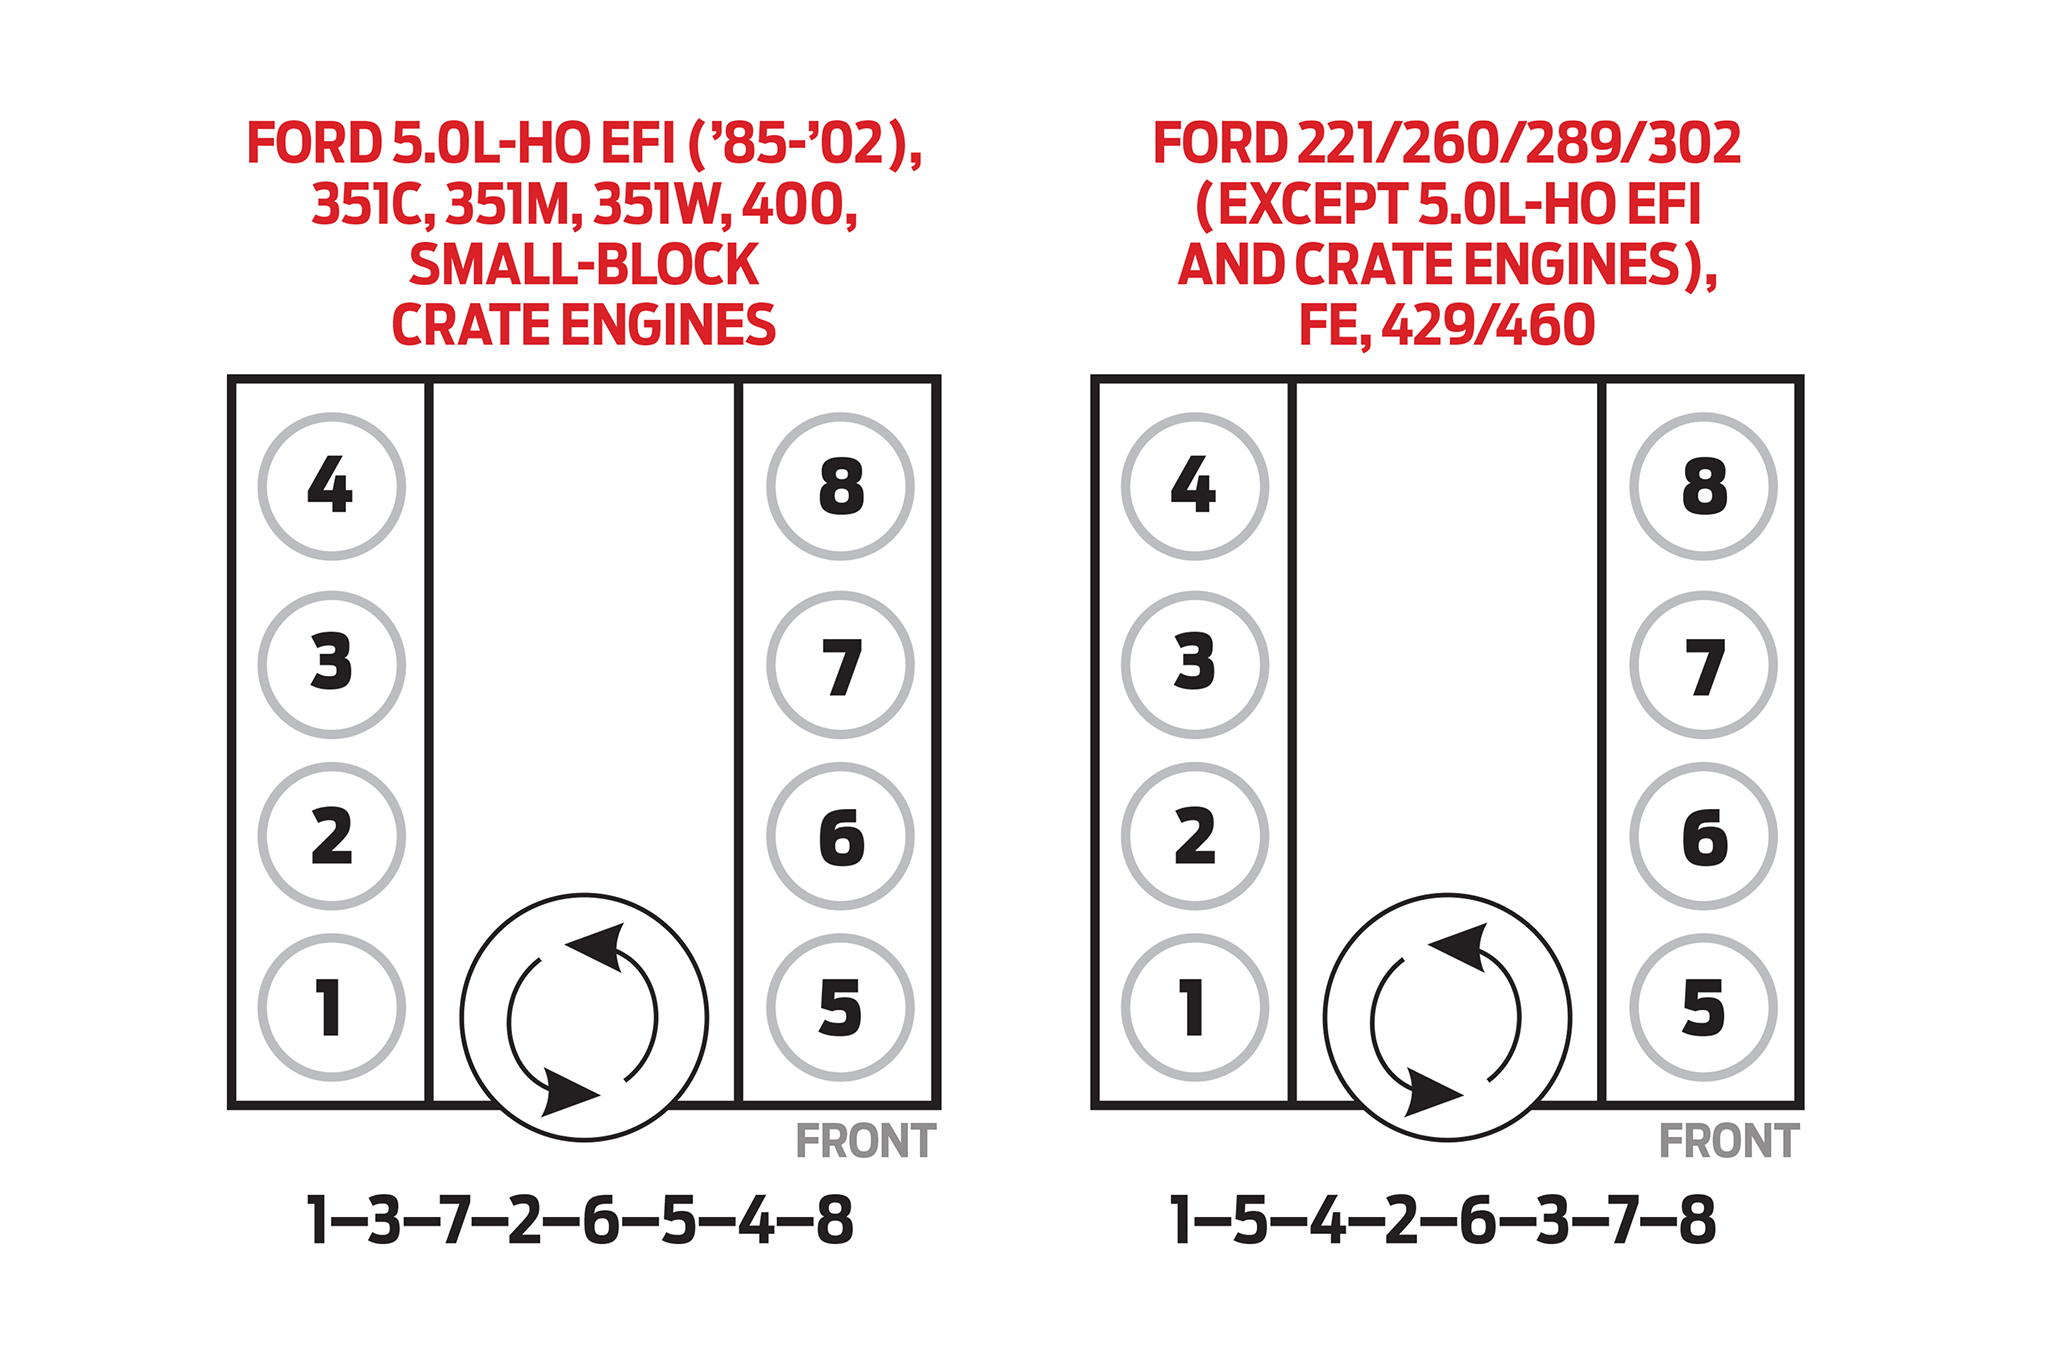 Firing Order For 50 Ford Ford Firing Order